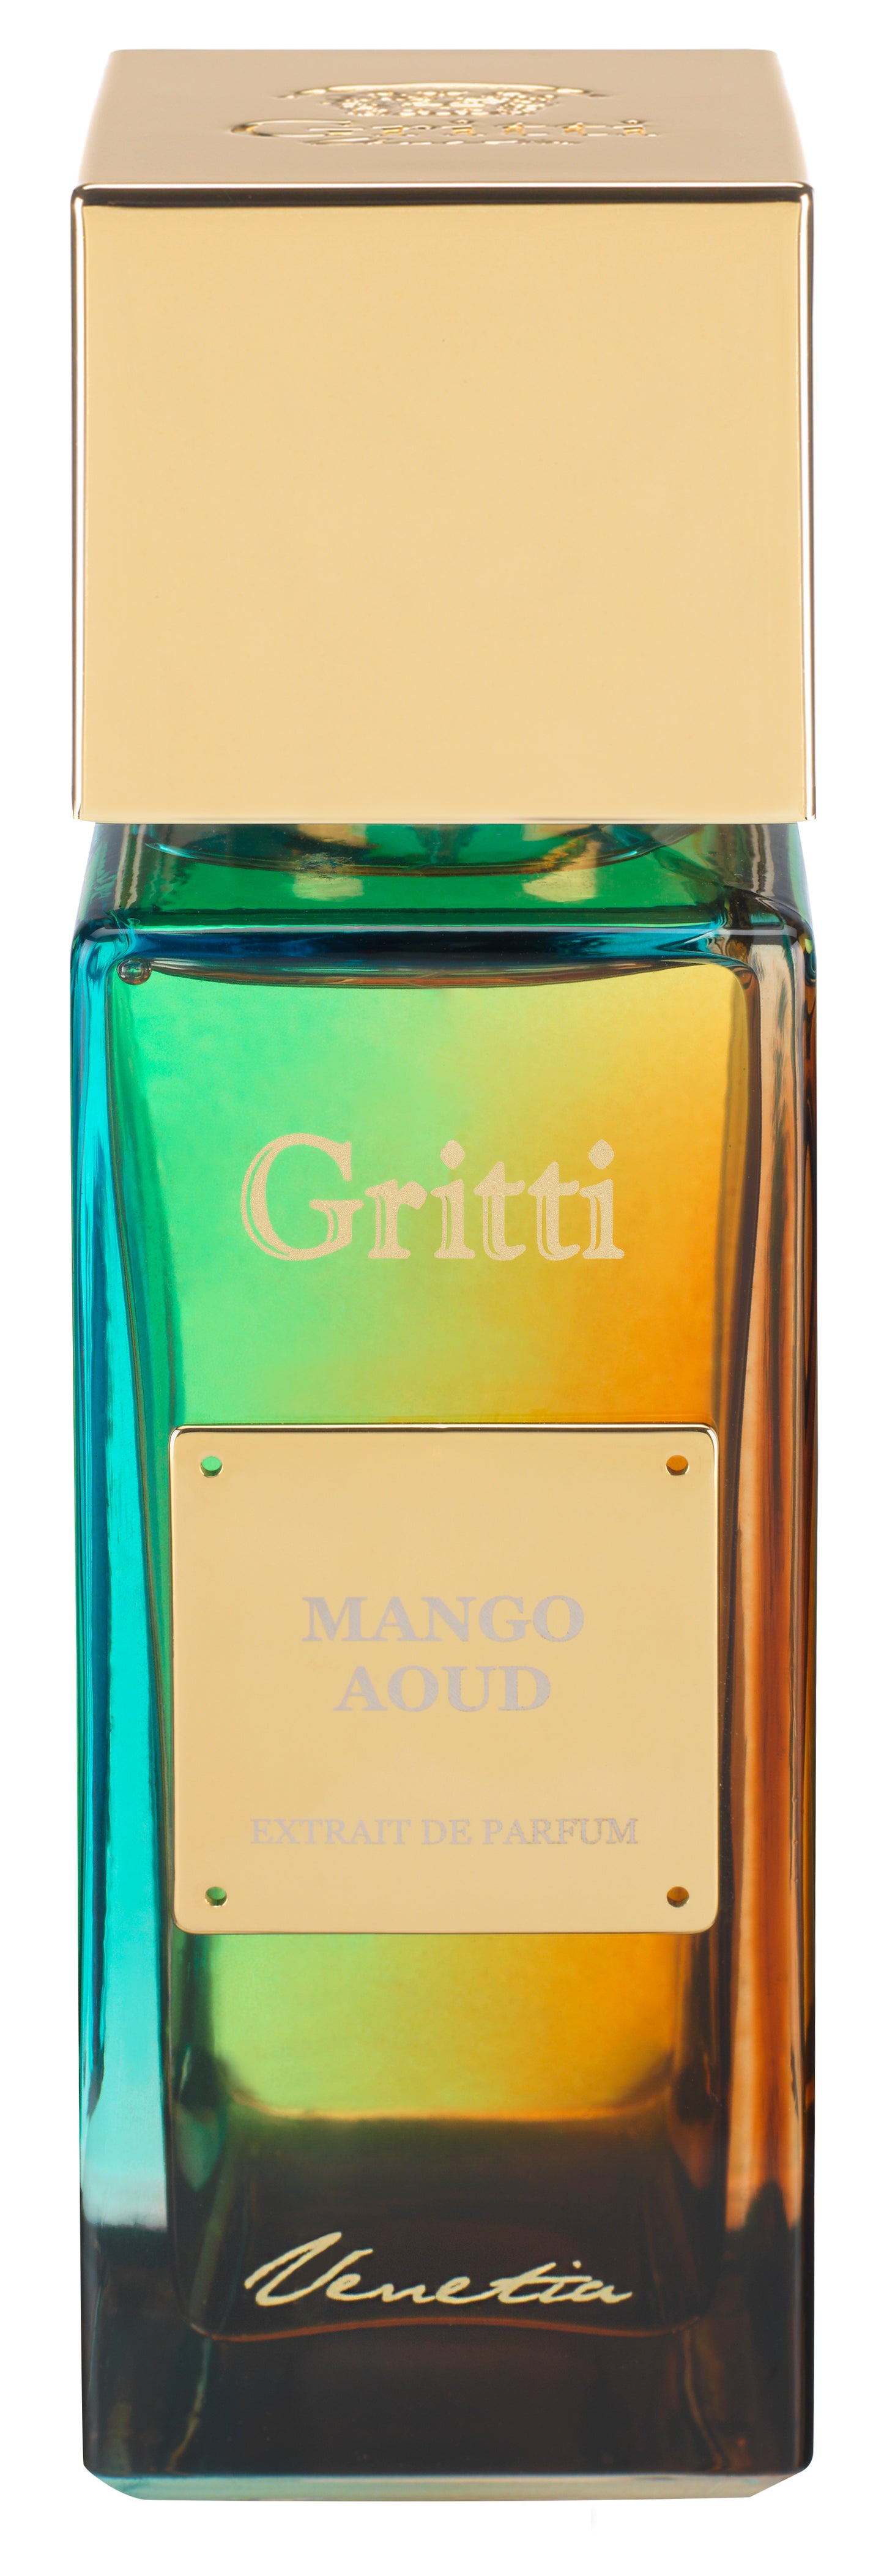 Mango Aoud Gritti Extrait de Parfum 100ml